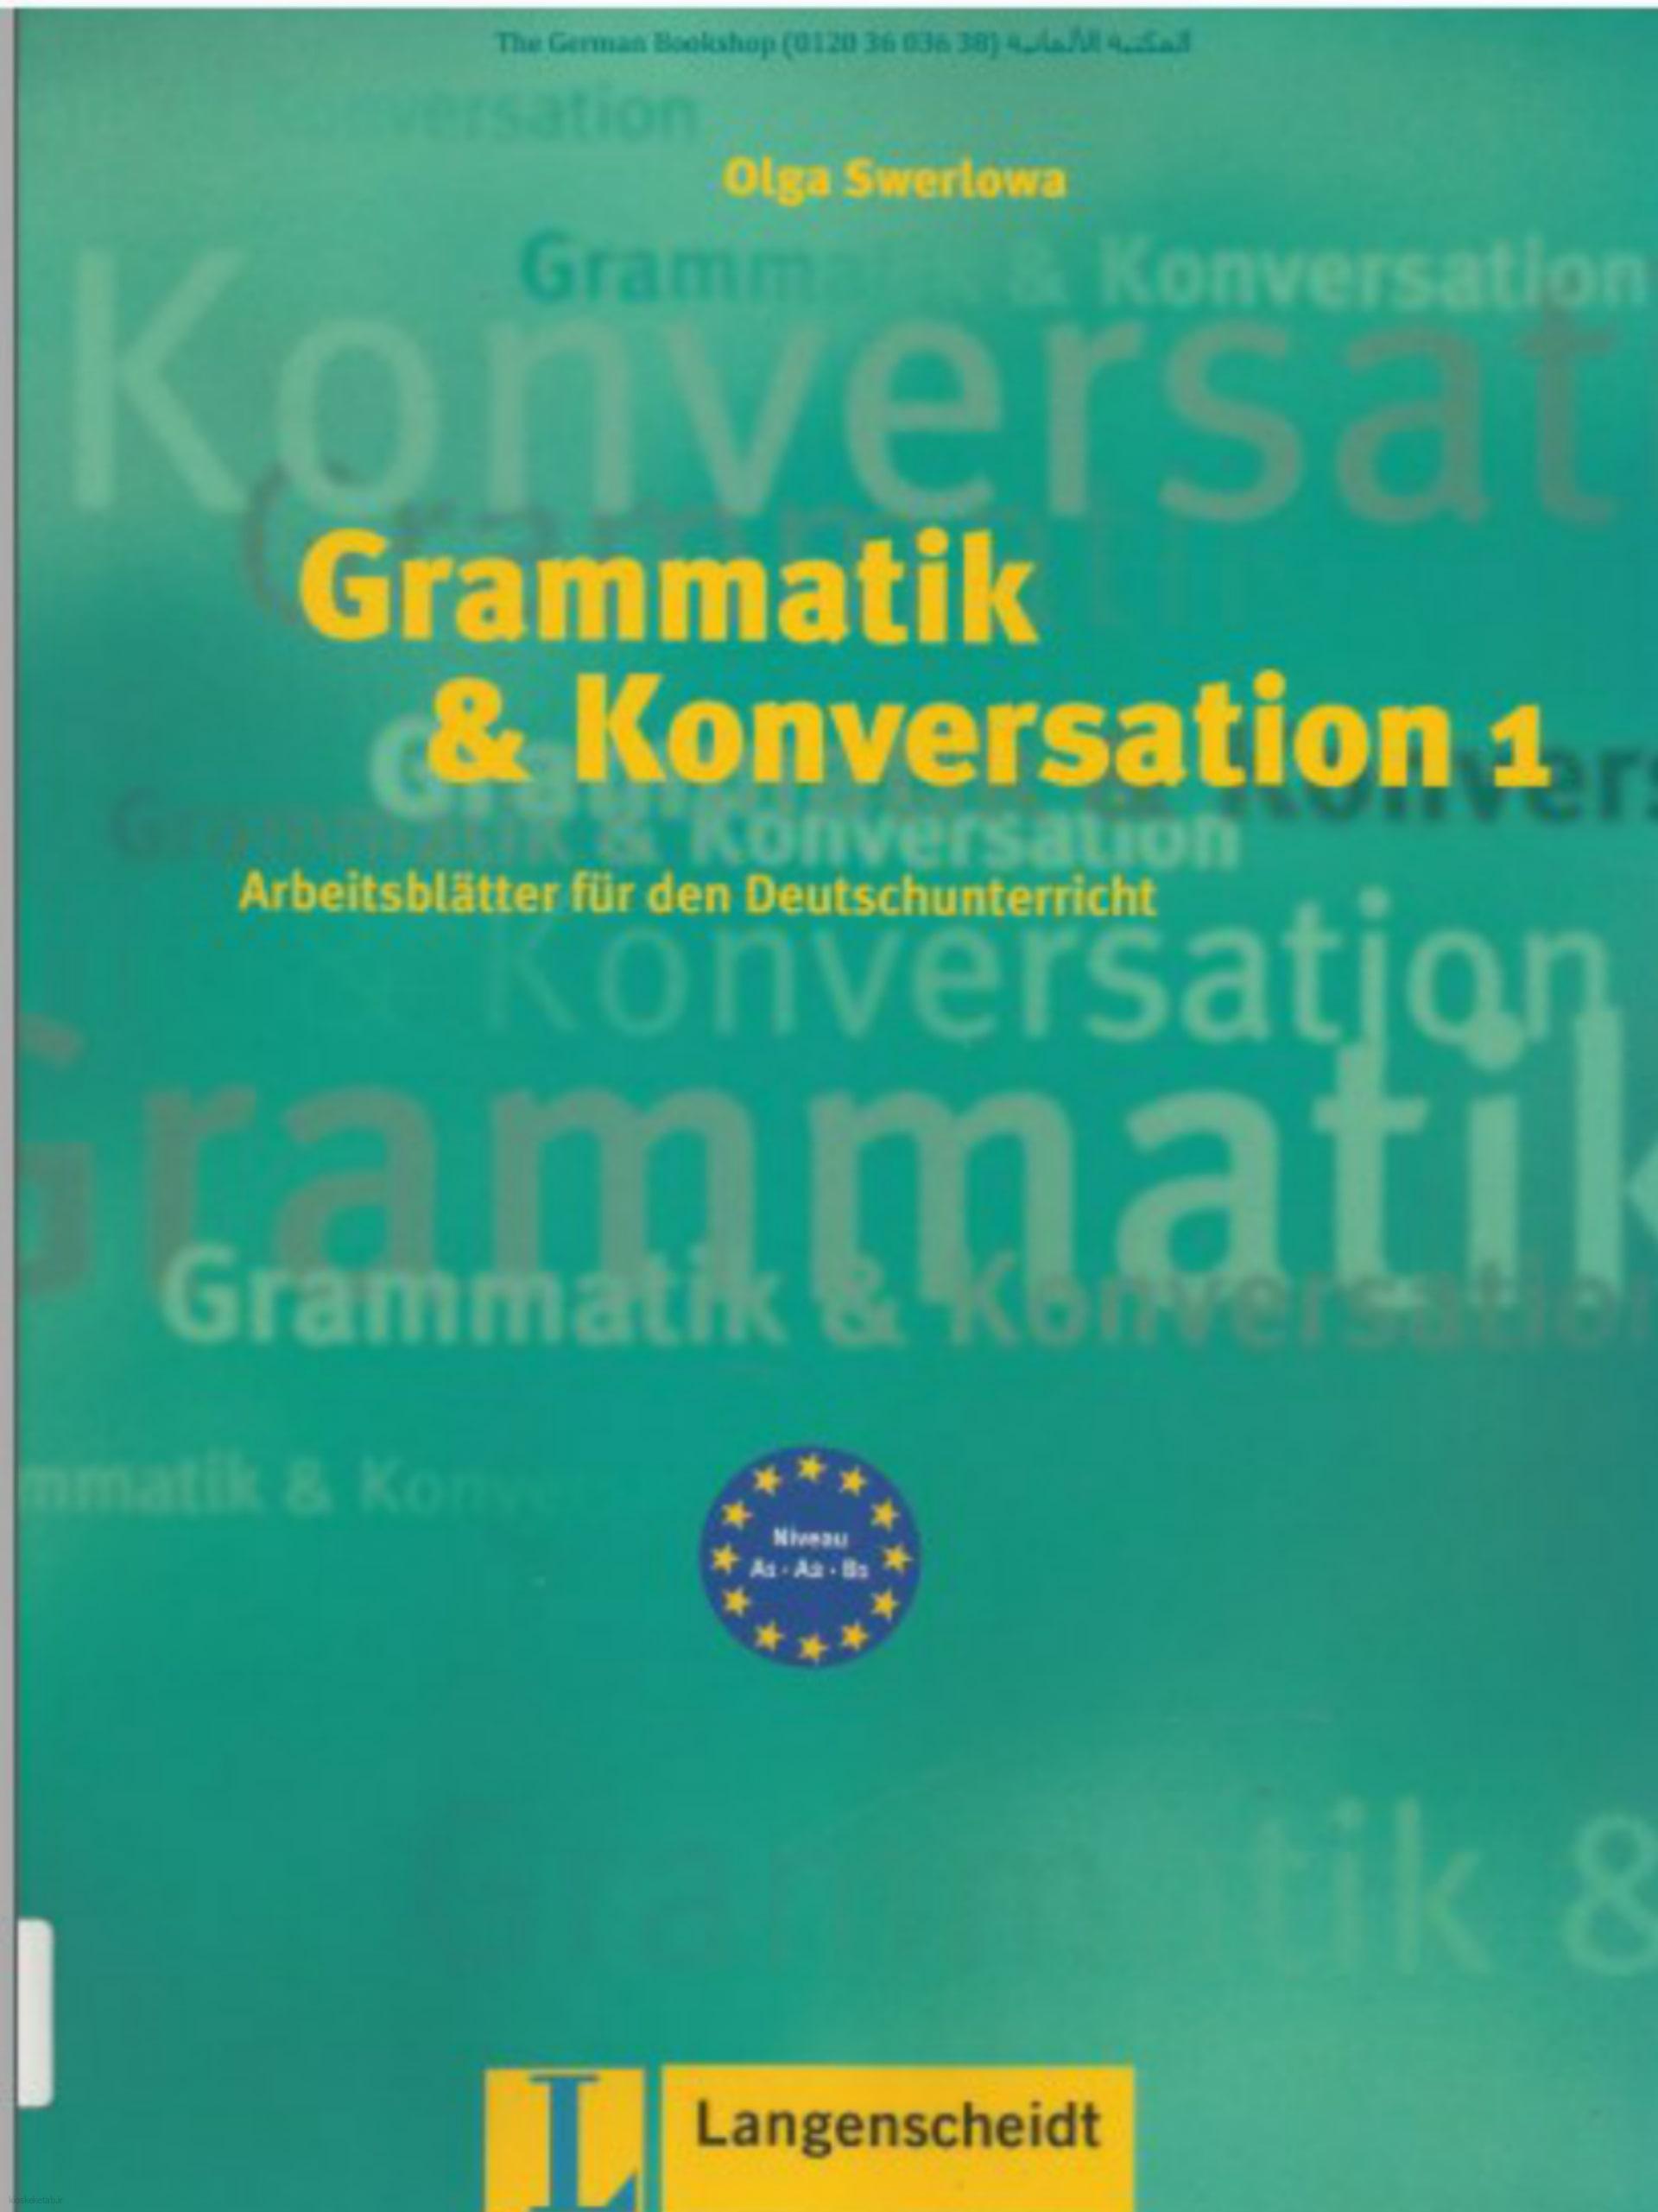 دانلود کتاب آلمانیgrammatik konversation 1